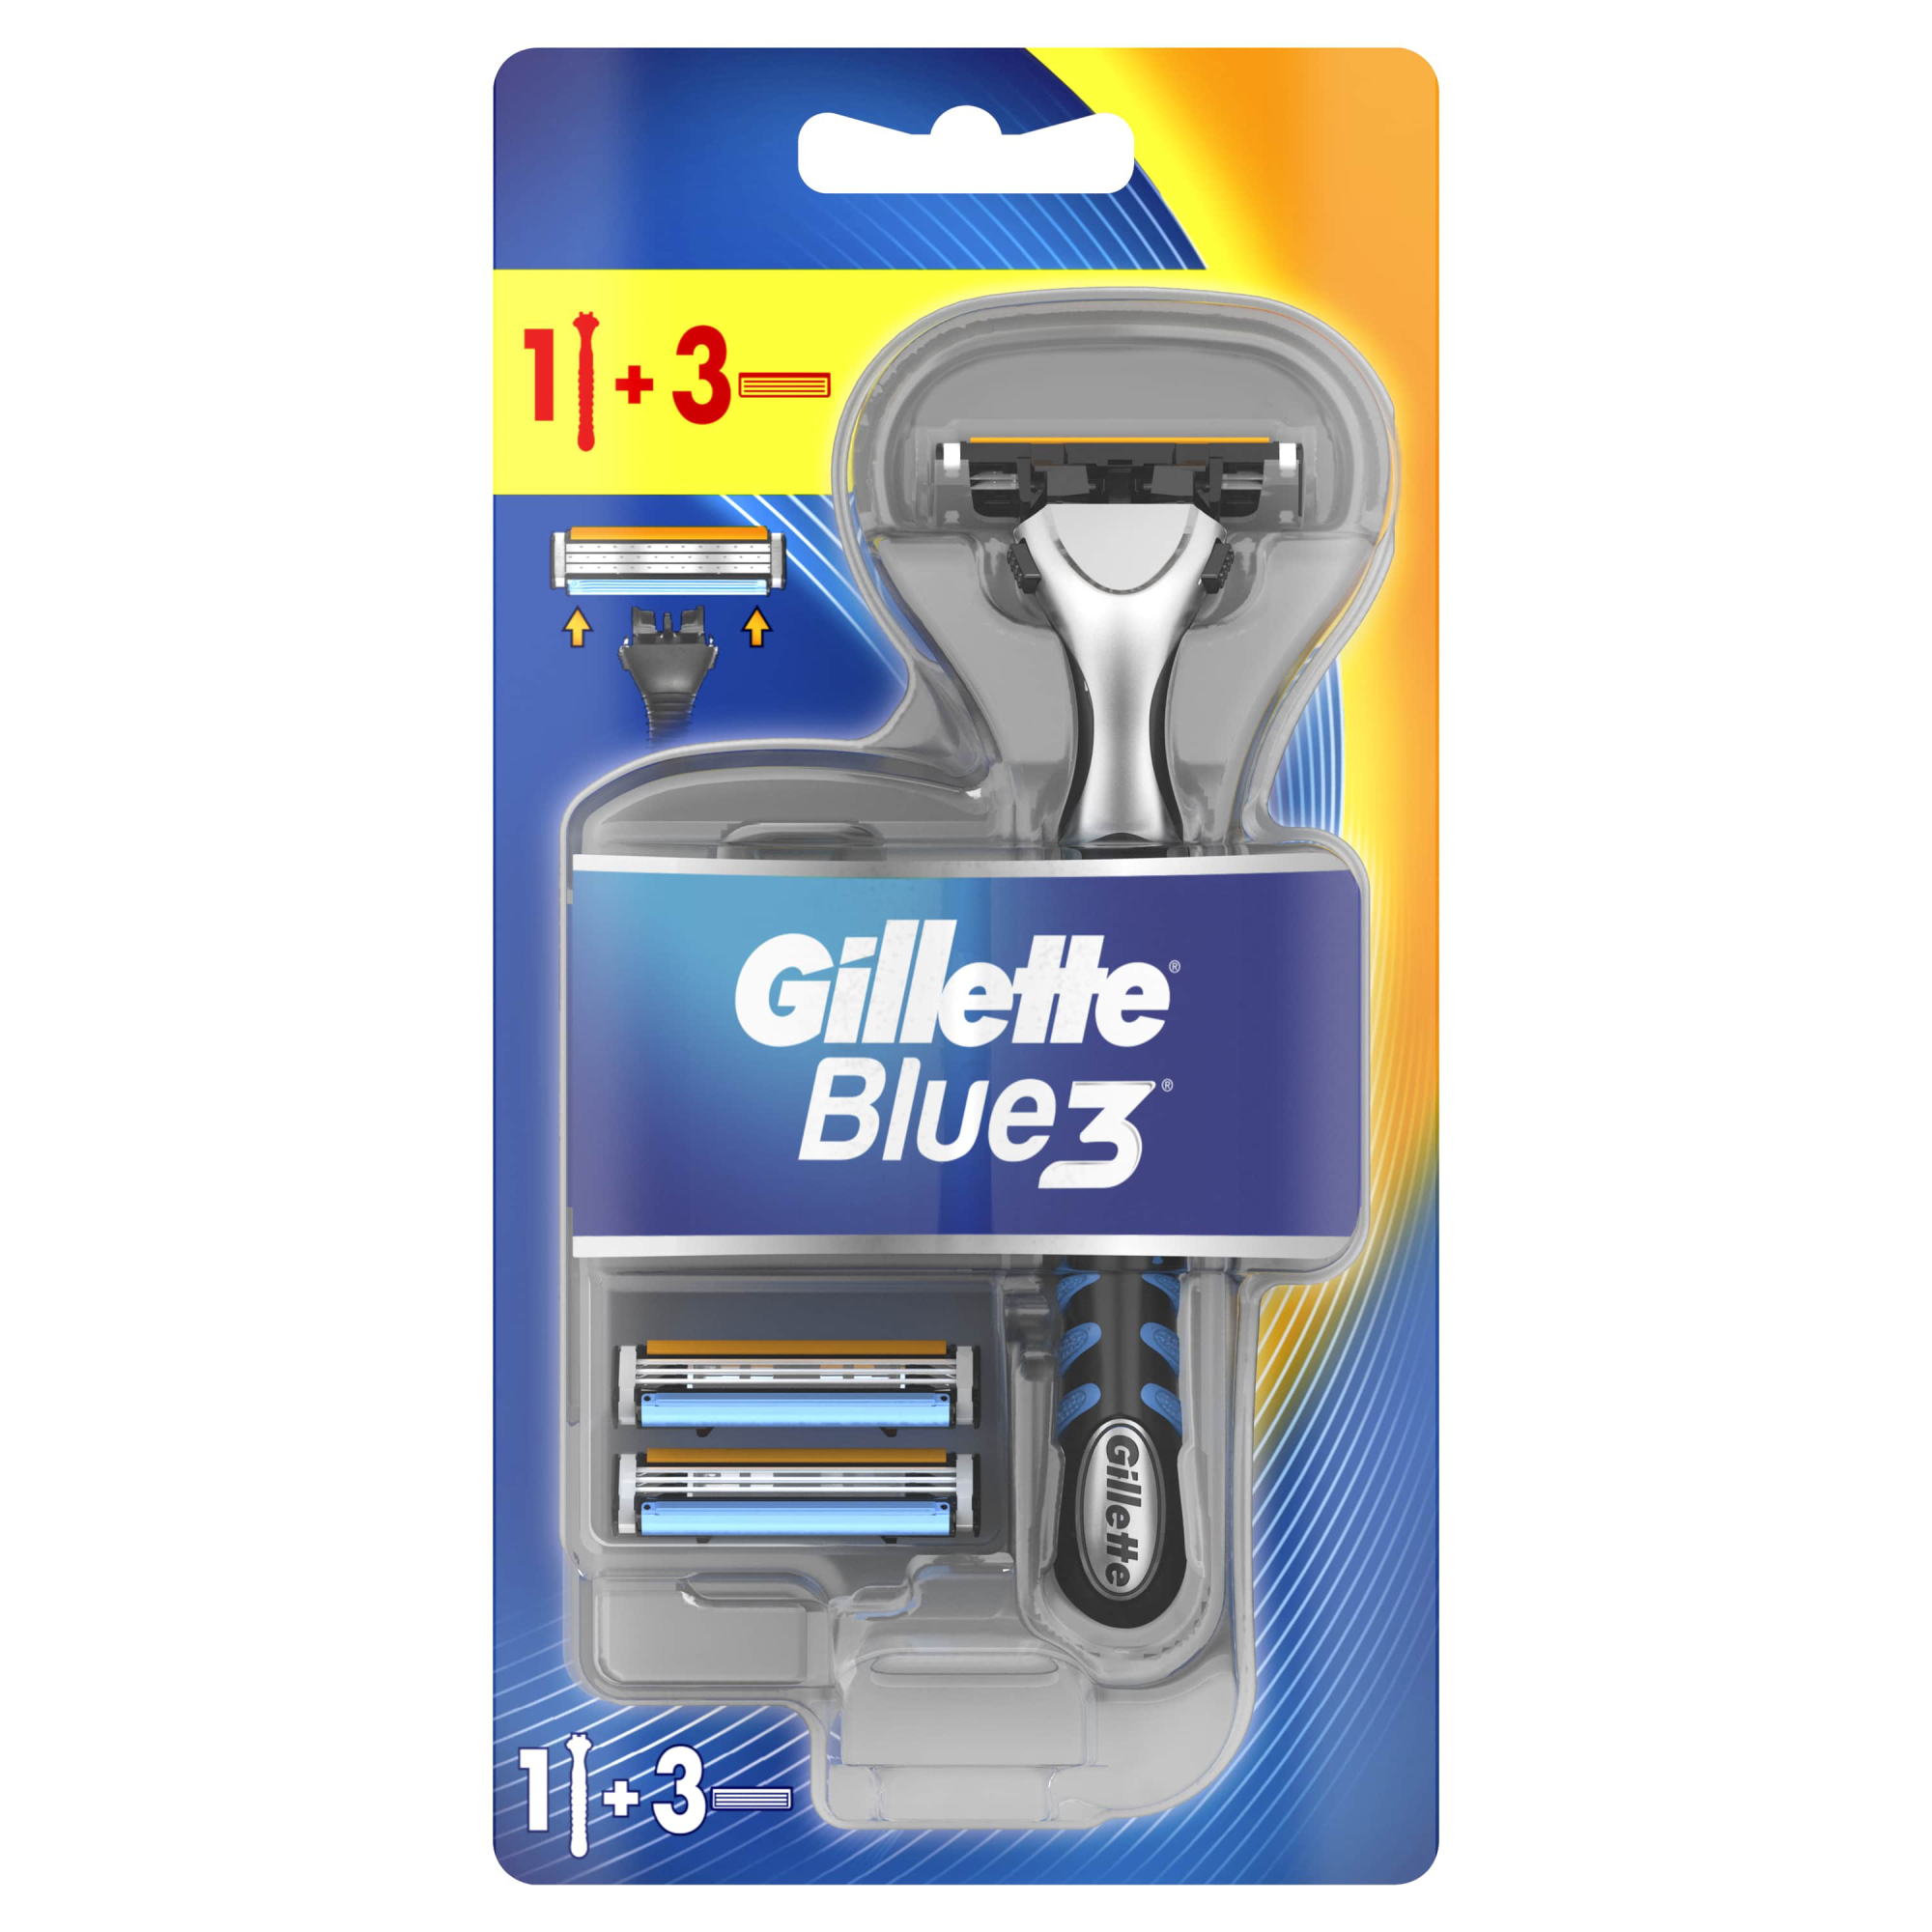 Мужская бритва Gillette Blue3, 3 кассеты, с 3 лезвиями, плавающая головка мужская бритва gillette fusion5 2 кассеты с 5 лезвиями с уменьшающими трение лезвиями с точным триммером